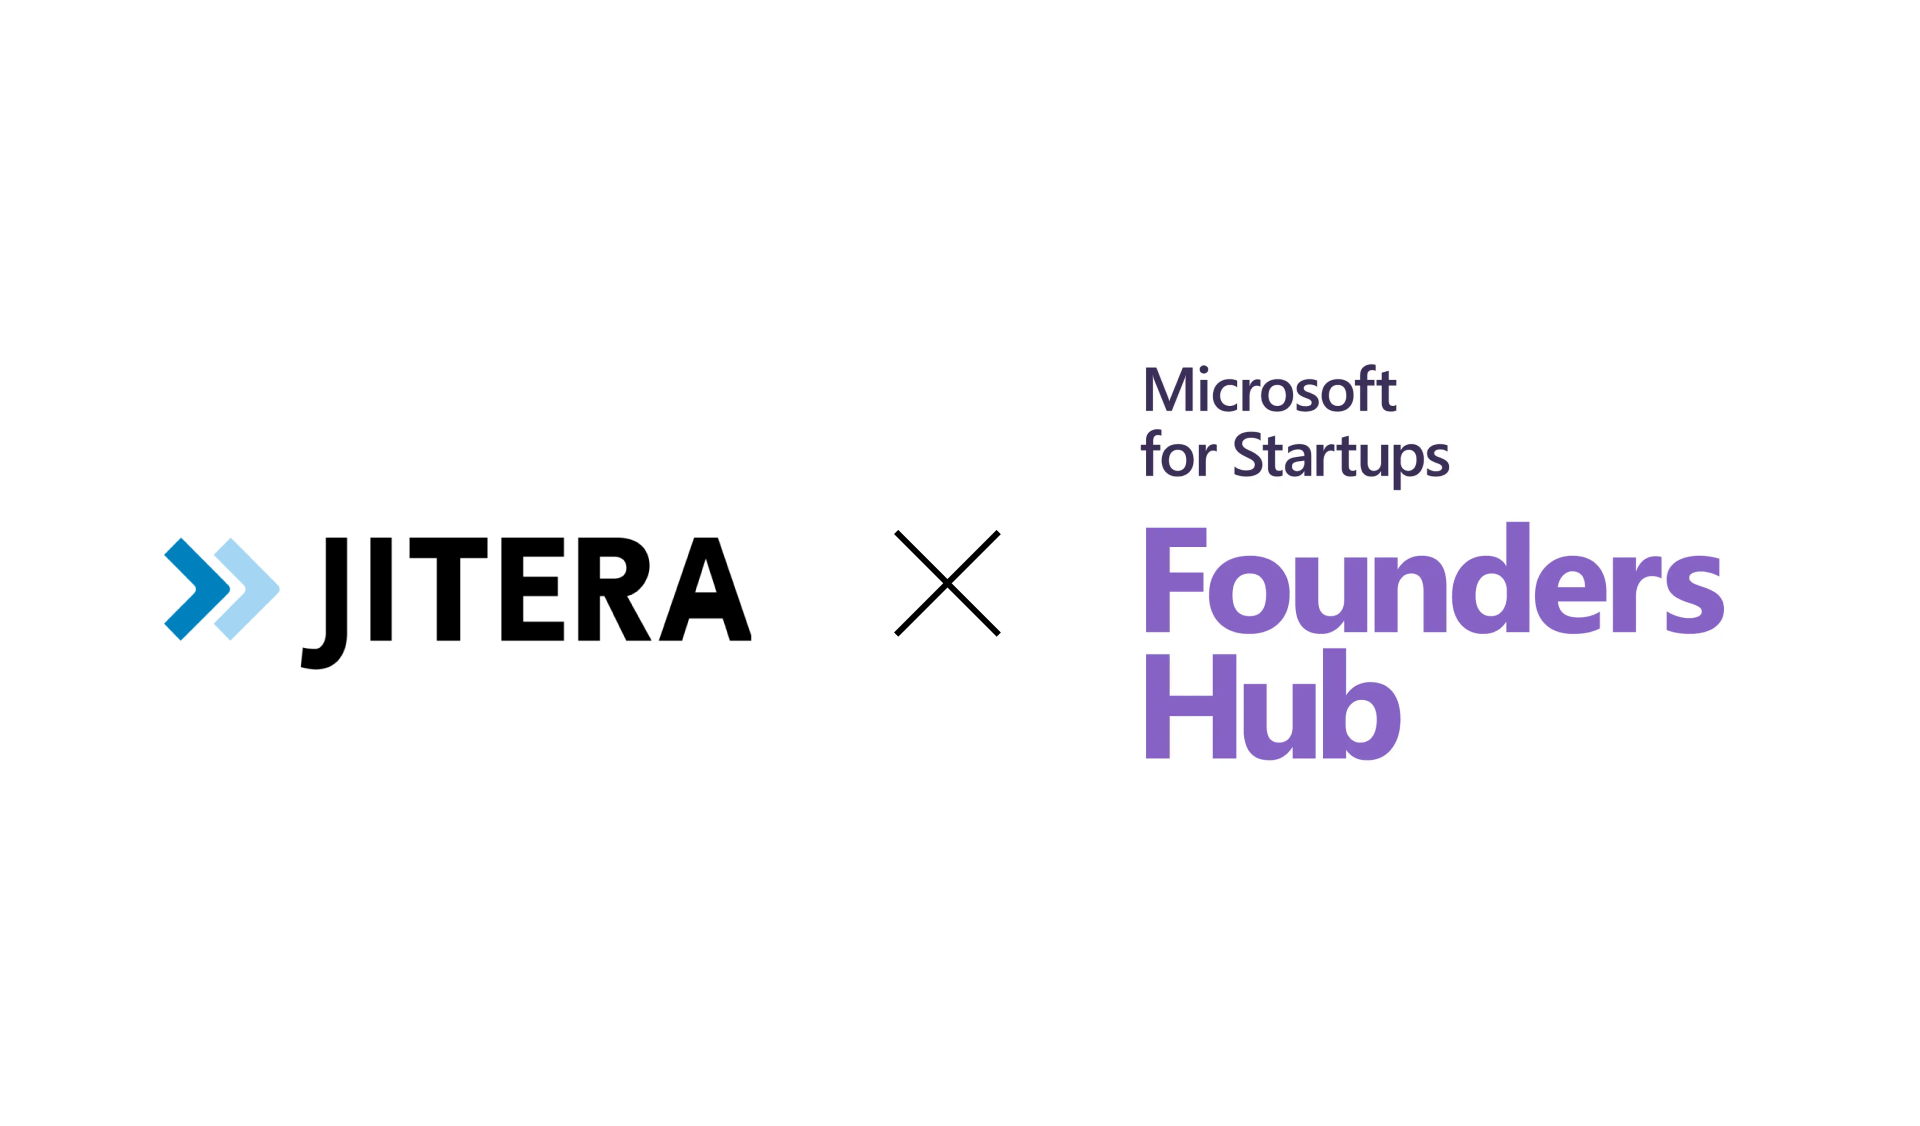 株式会社Jitera、マイクロソフト社のスタートアップ支援プログラム「Microsoft for Startups Founders Hub」に採択